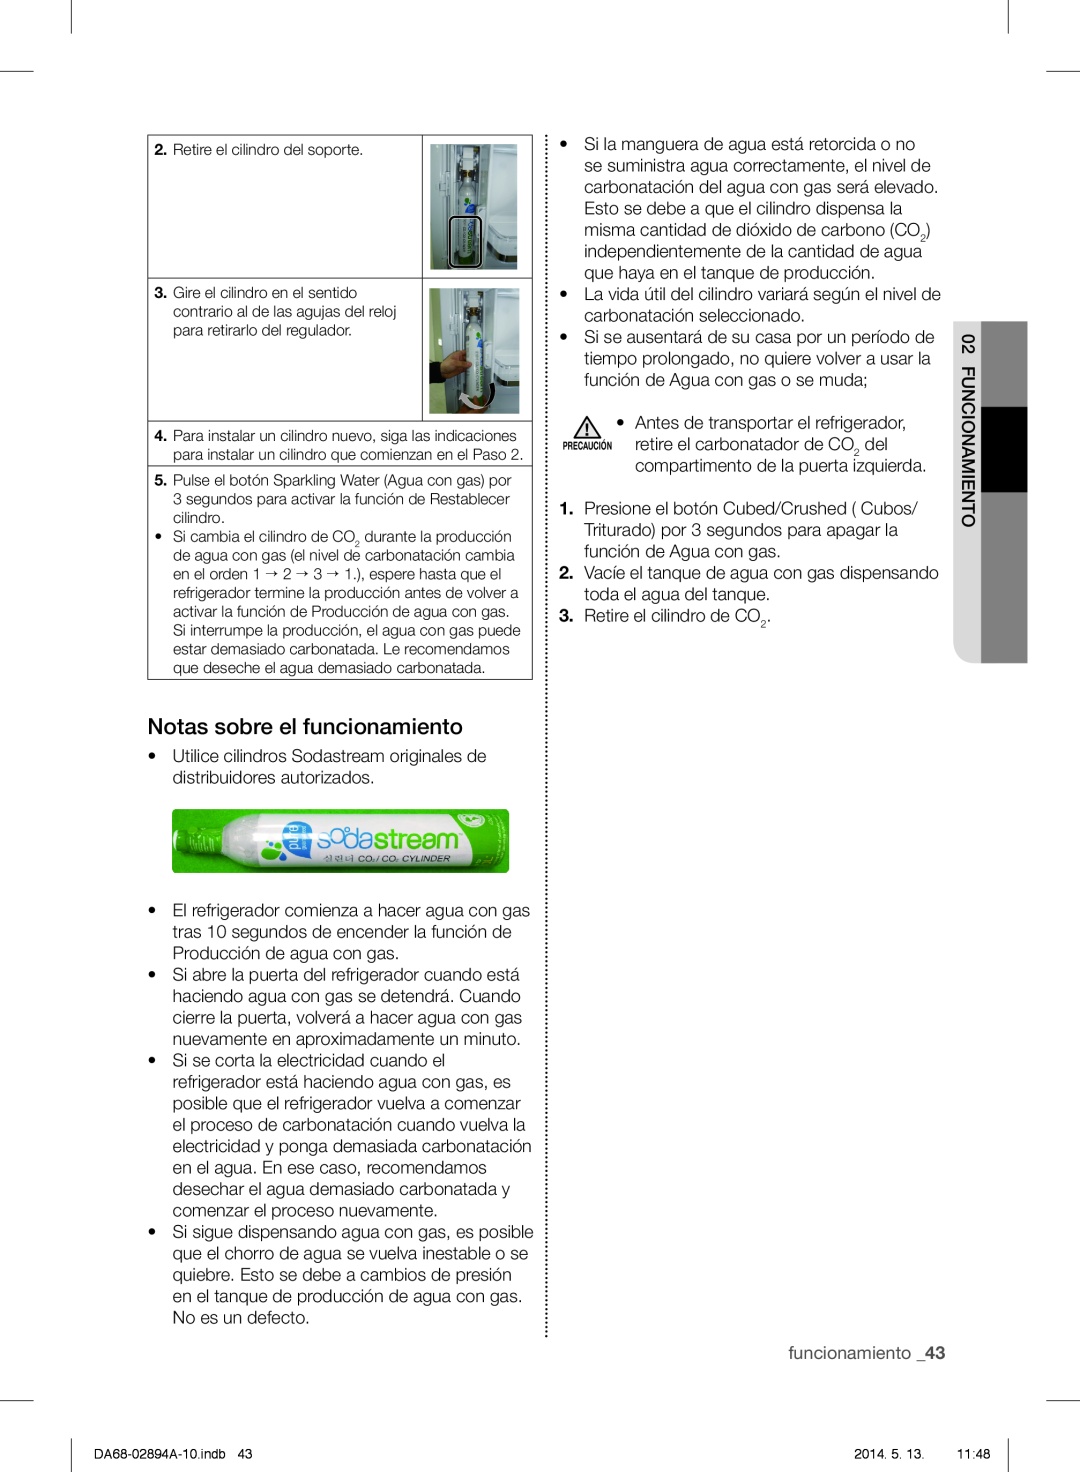 Samsung RF31FMESBSR user manual Notas sobre el funcionamiento, funcionamiento _43 